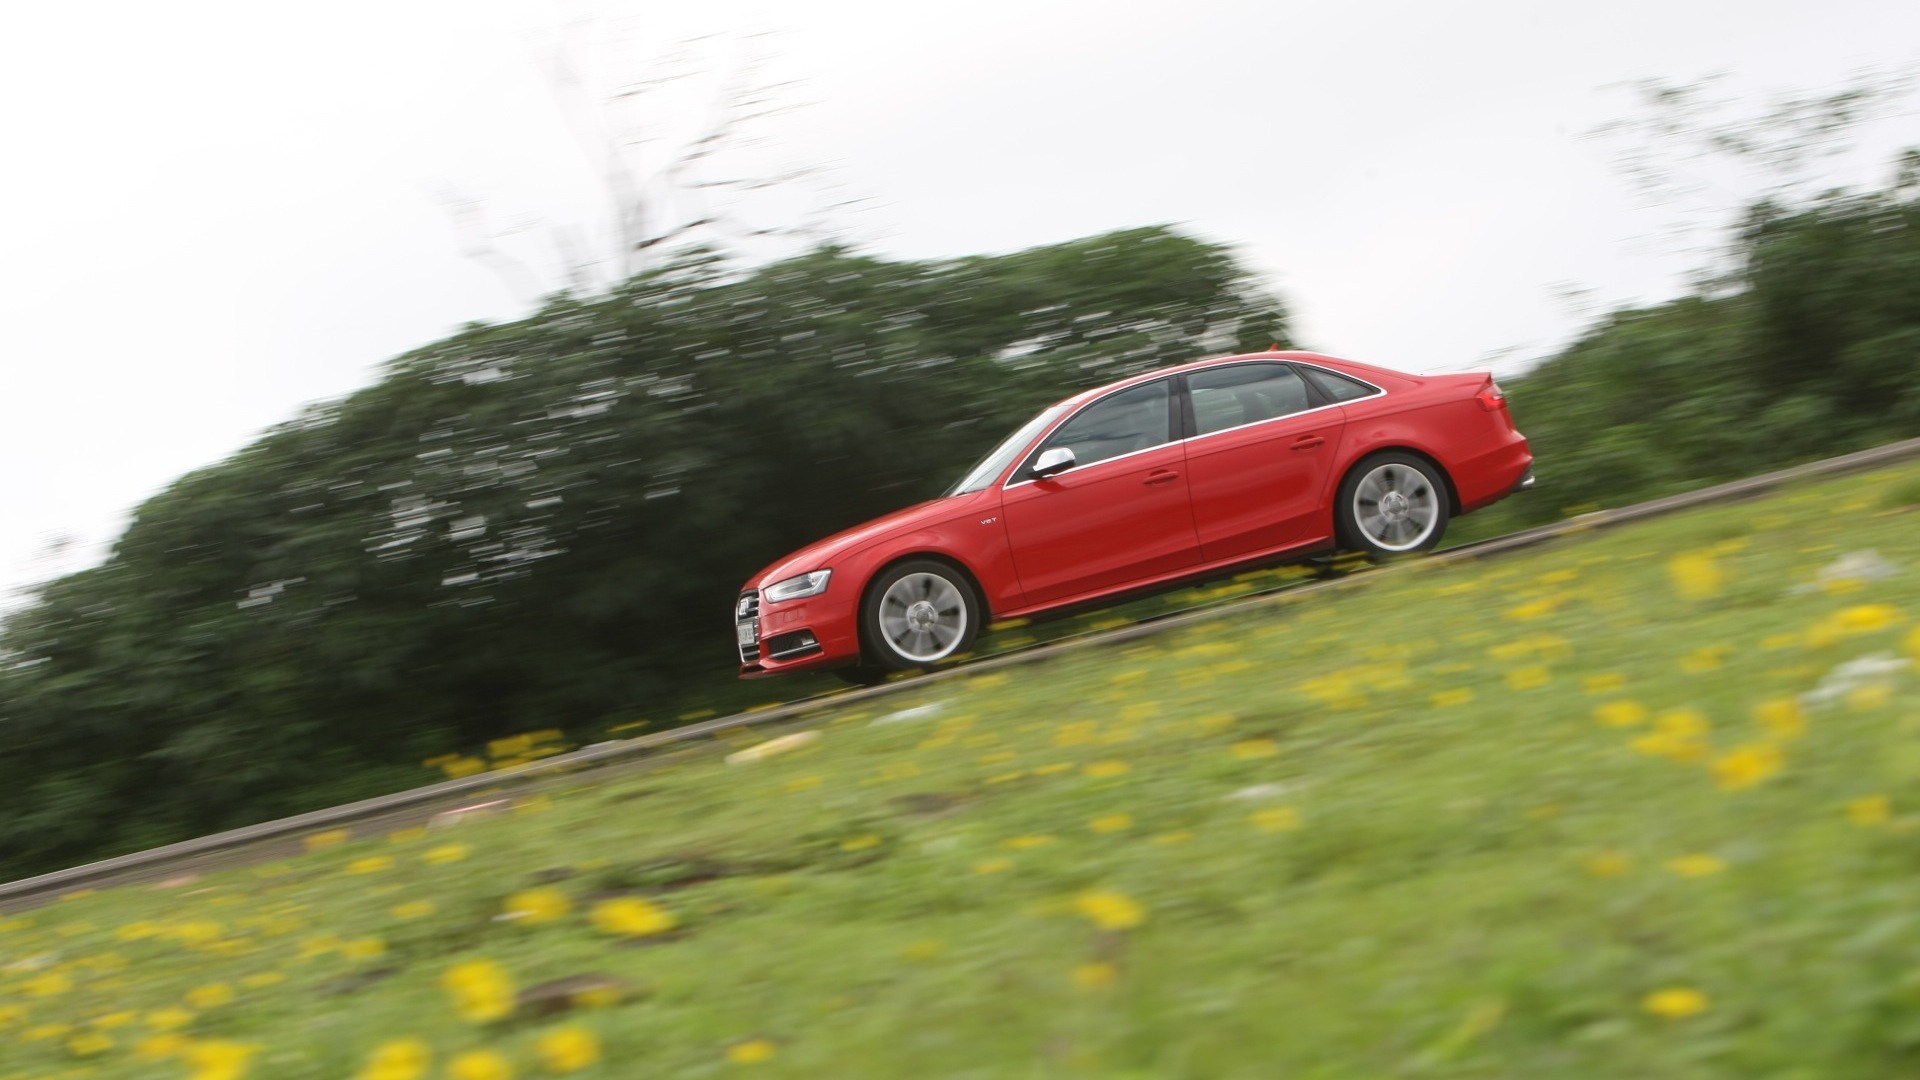 Audi-S4-2012-3-0-TFSI-Quattro-Exterior